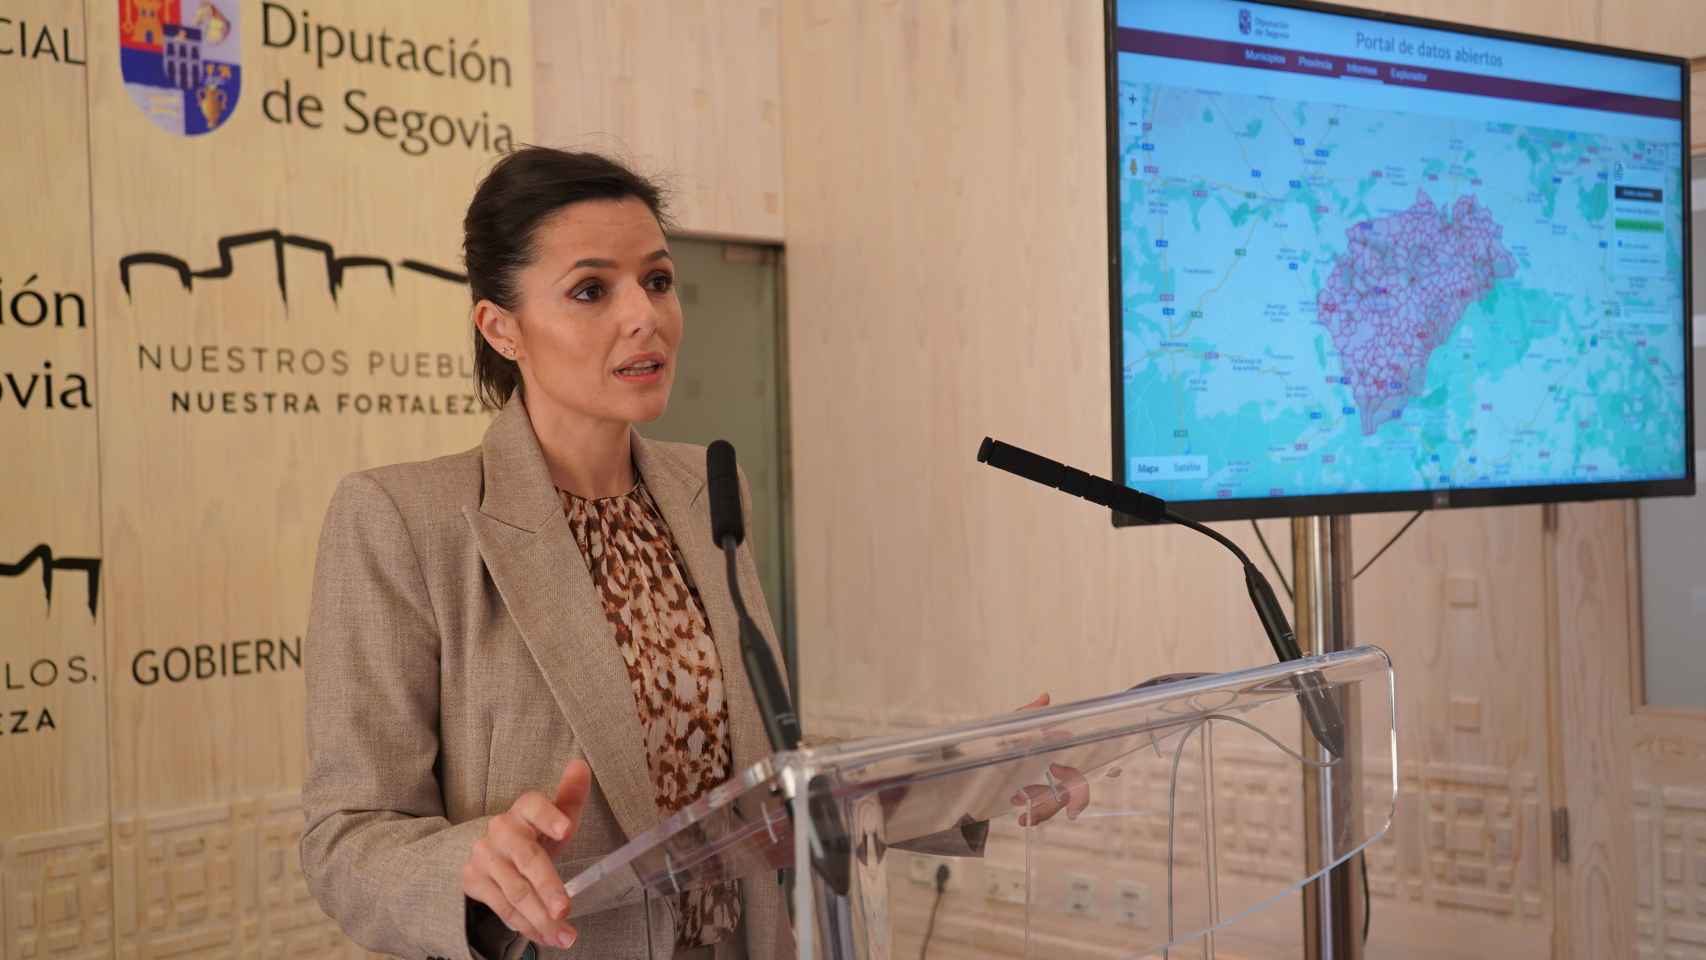 Presentación del Portal de Datos Abiertos en la Diputación de Segovia, este lunes.